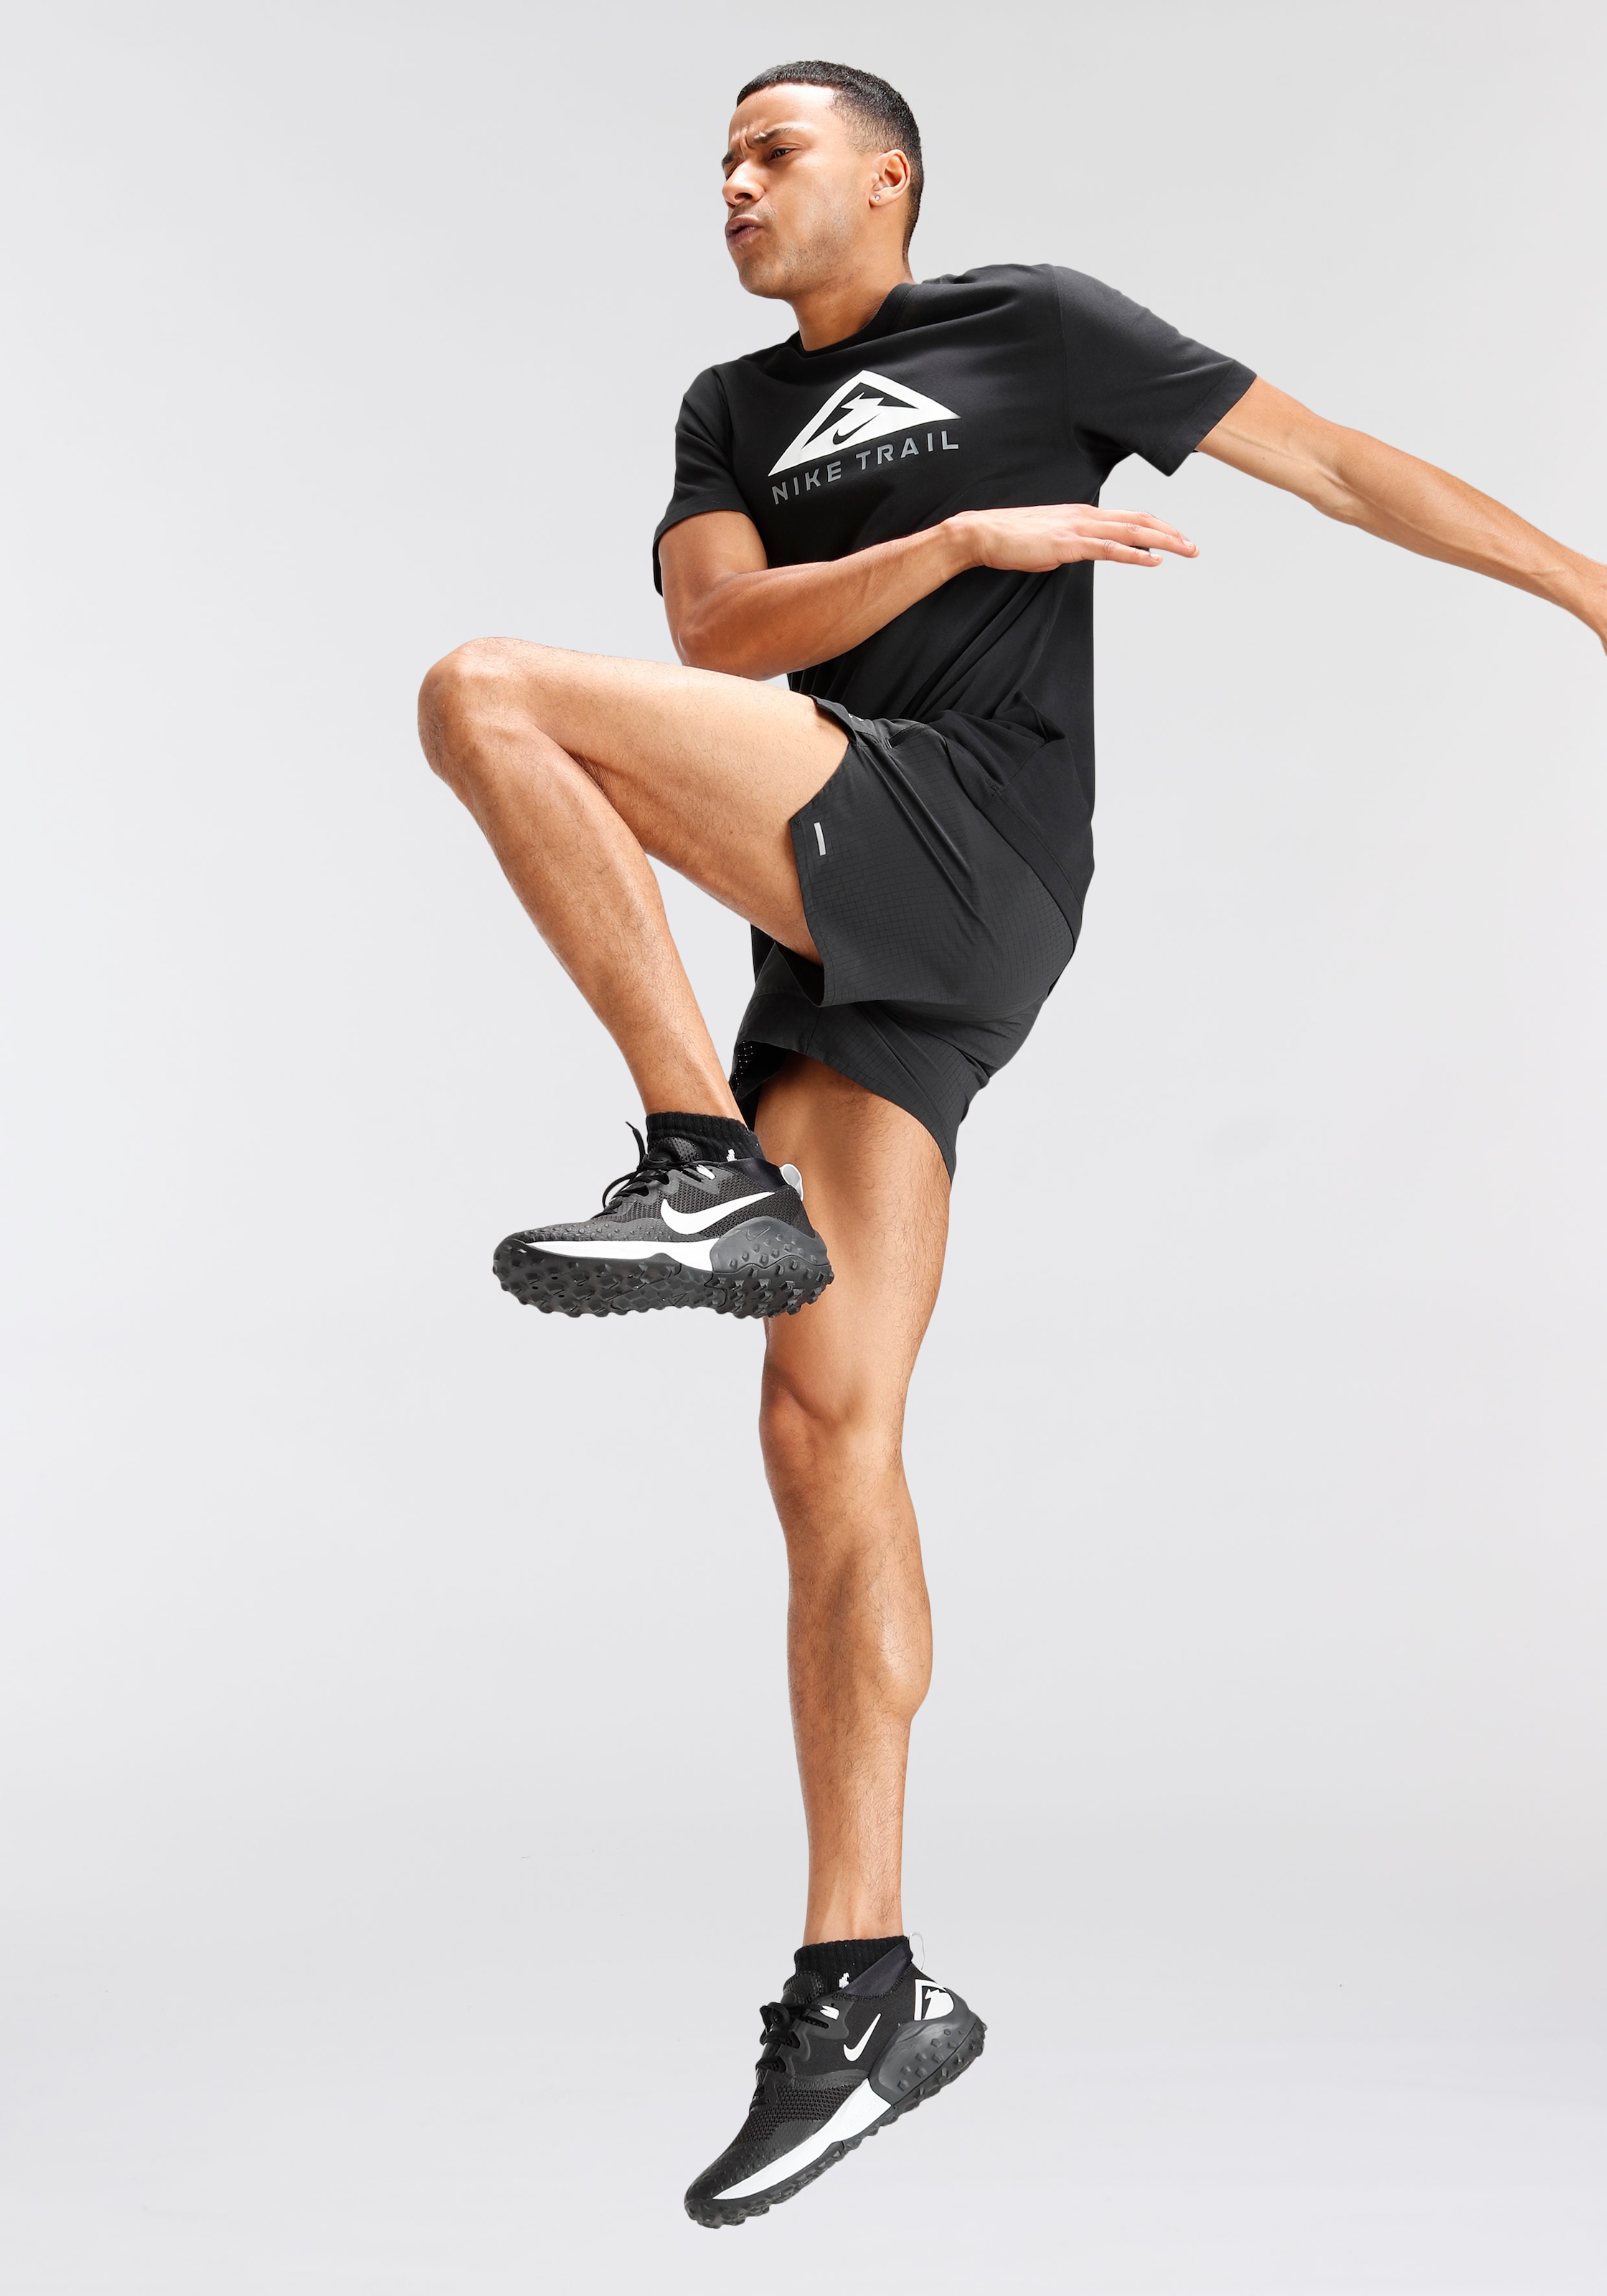 Nike Trailrunningschuh »WILDHORSE 7 TRAIL«